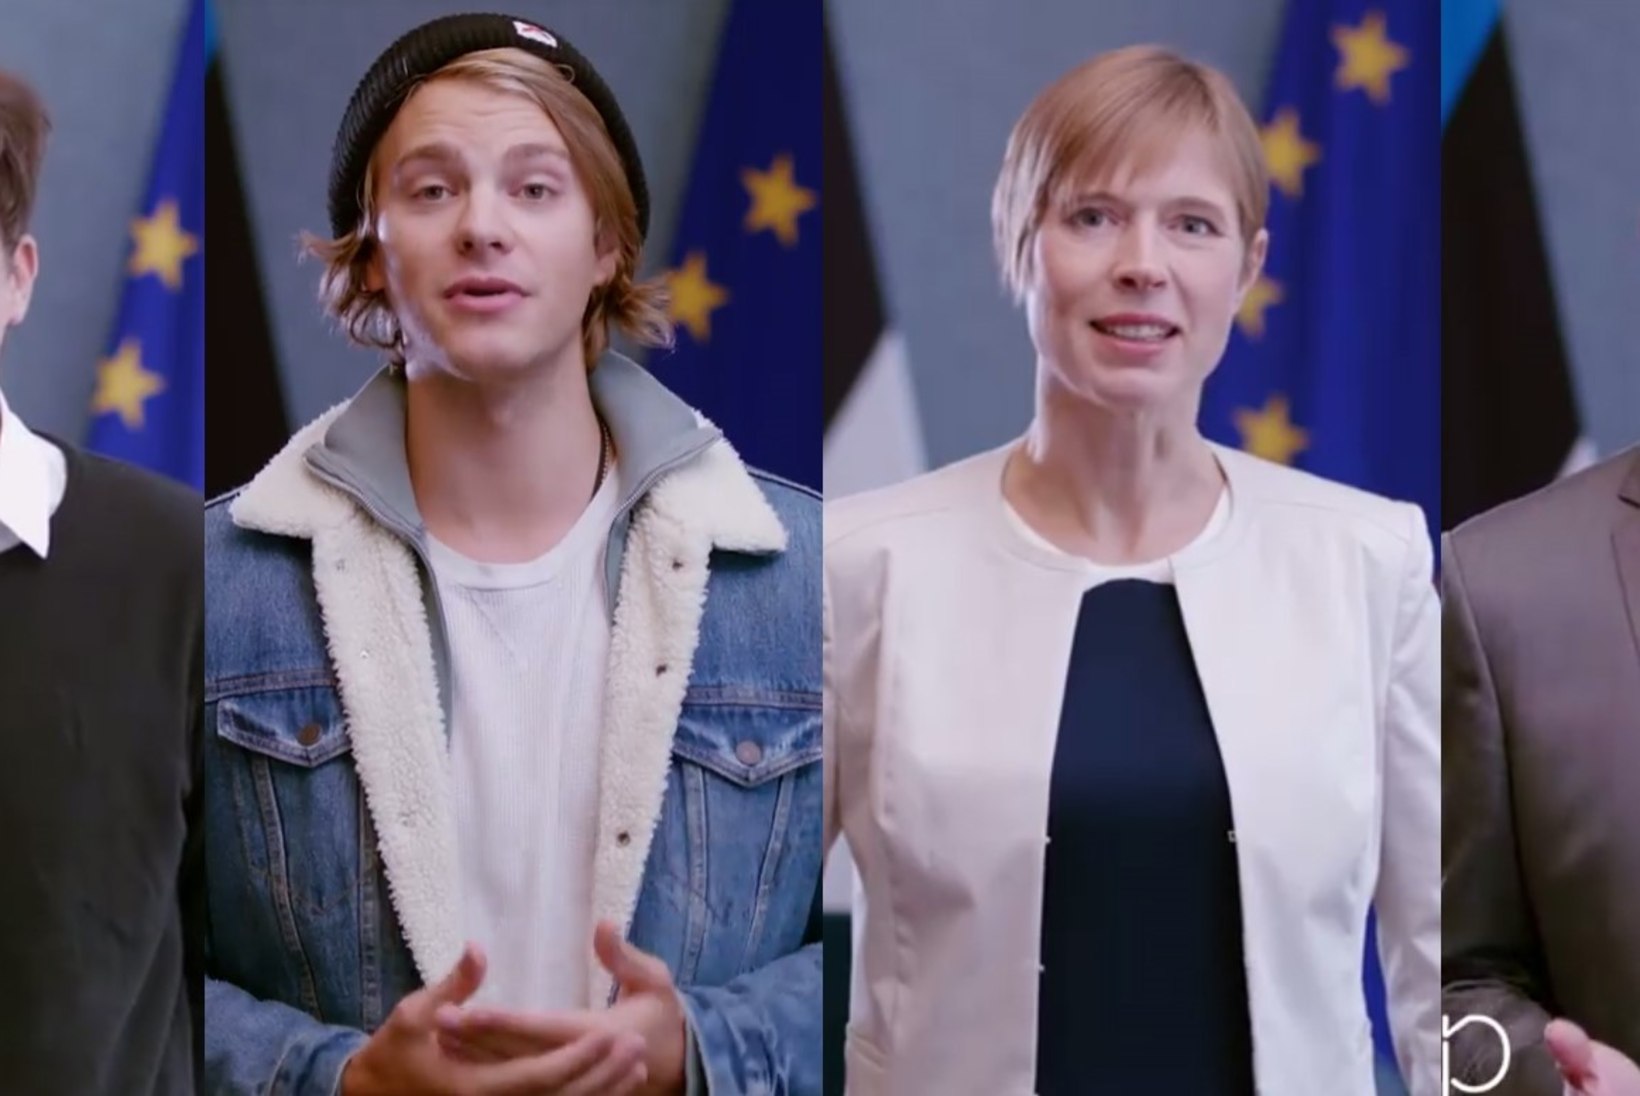 VAATA VIDEOT: president Kaljulaid ja mitmed staarid kutsuvad noori valima